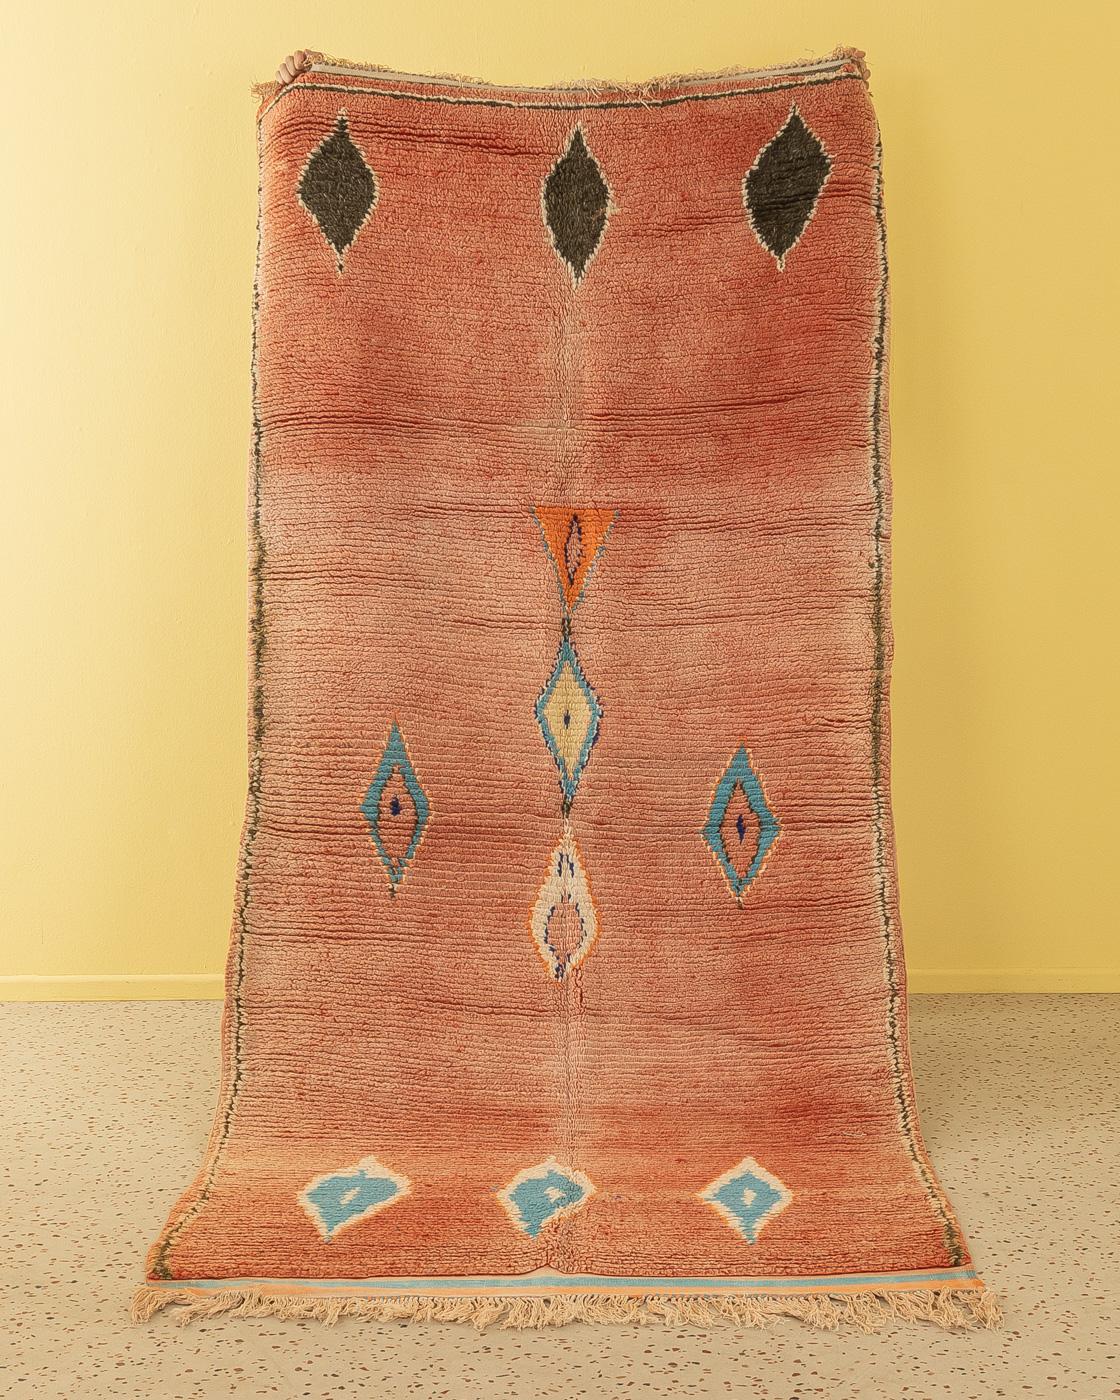 Dieser Vintage Boujad ist ein Teppich aus 100 % Wolle - weich und angenehm zu tragen. Unsere Berberteppiche sind handgefertigt, ein Knoten nach dem anderen. Jeder unserer Berberteppiche ist ein langlebiges Einzelstück, das auf nachhaltige Weise aus